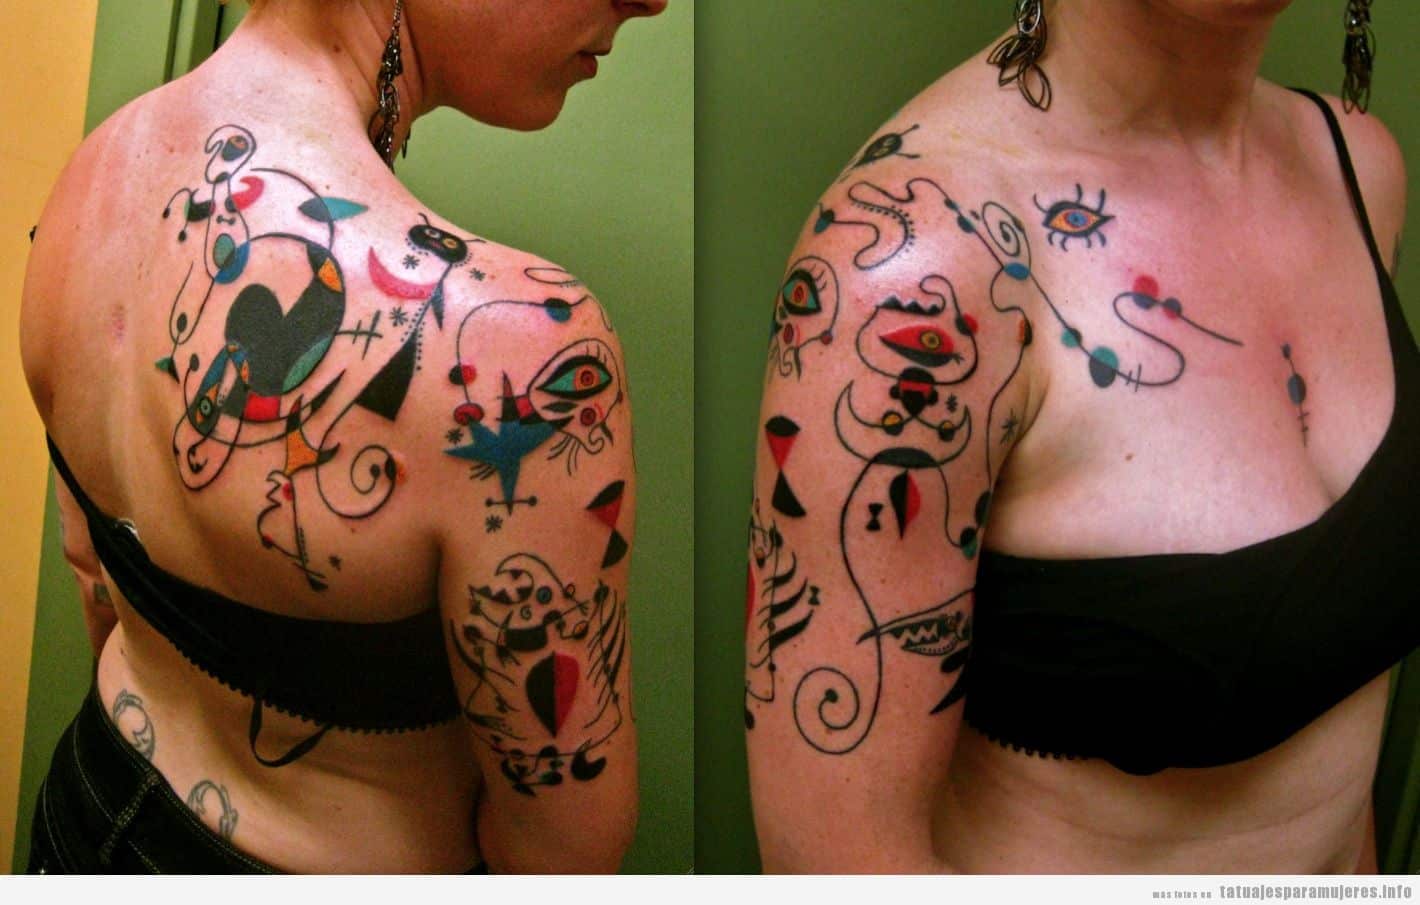 Tatuaje inspirado en obra de arte de Miró